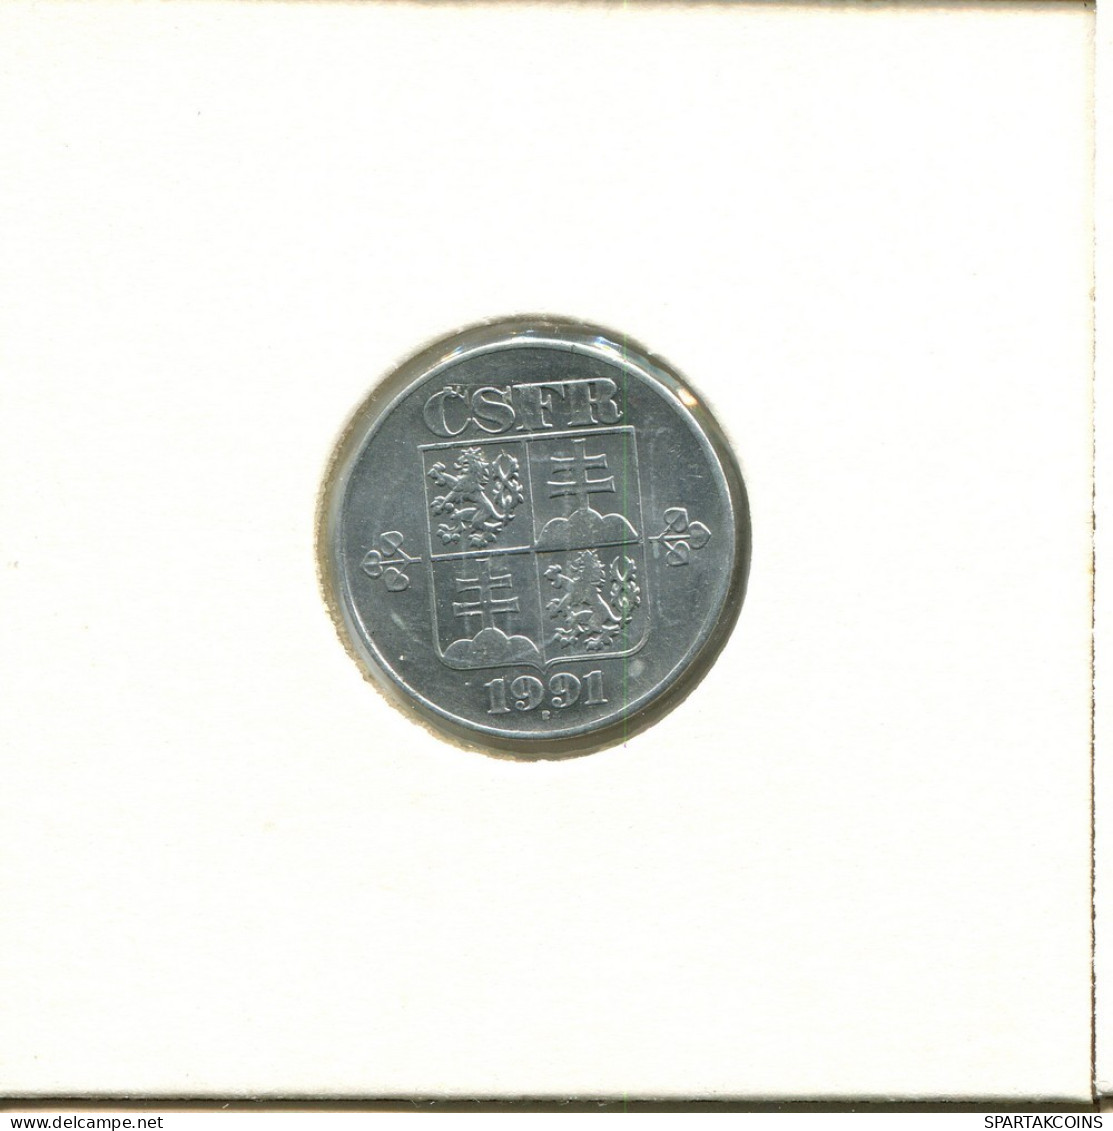 10 HALERU 1991 CHECOSLOVAQUIA CZECHOESLOVAQUIA SLOVAKIA Moneda #AZ937.E.A - Tsjechoslowakije